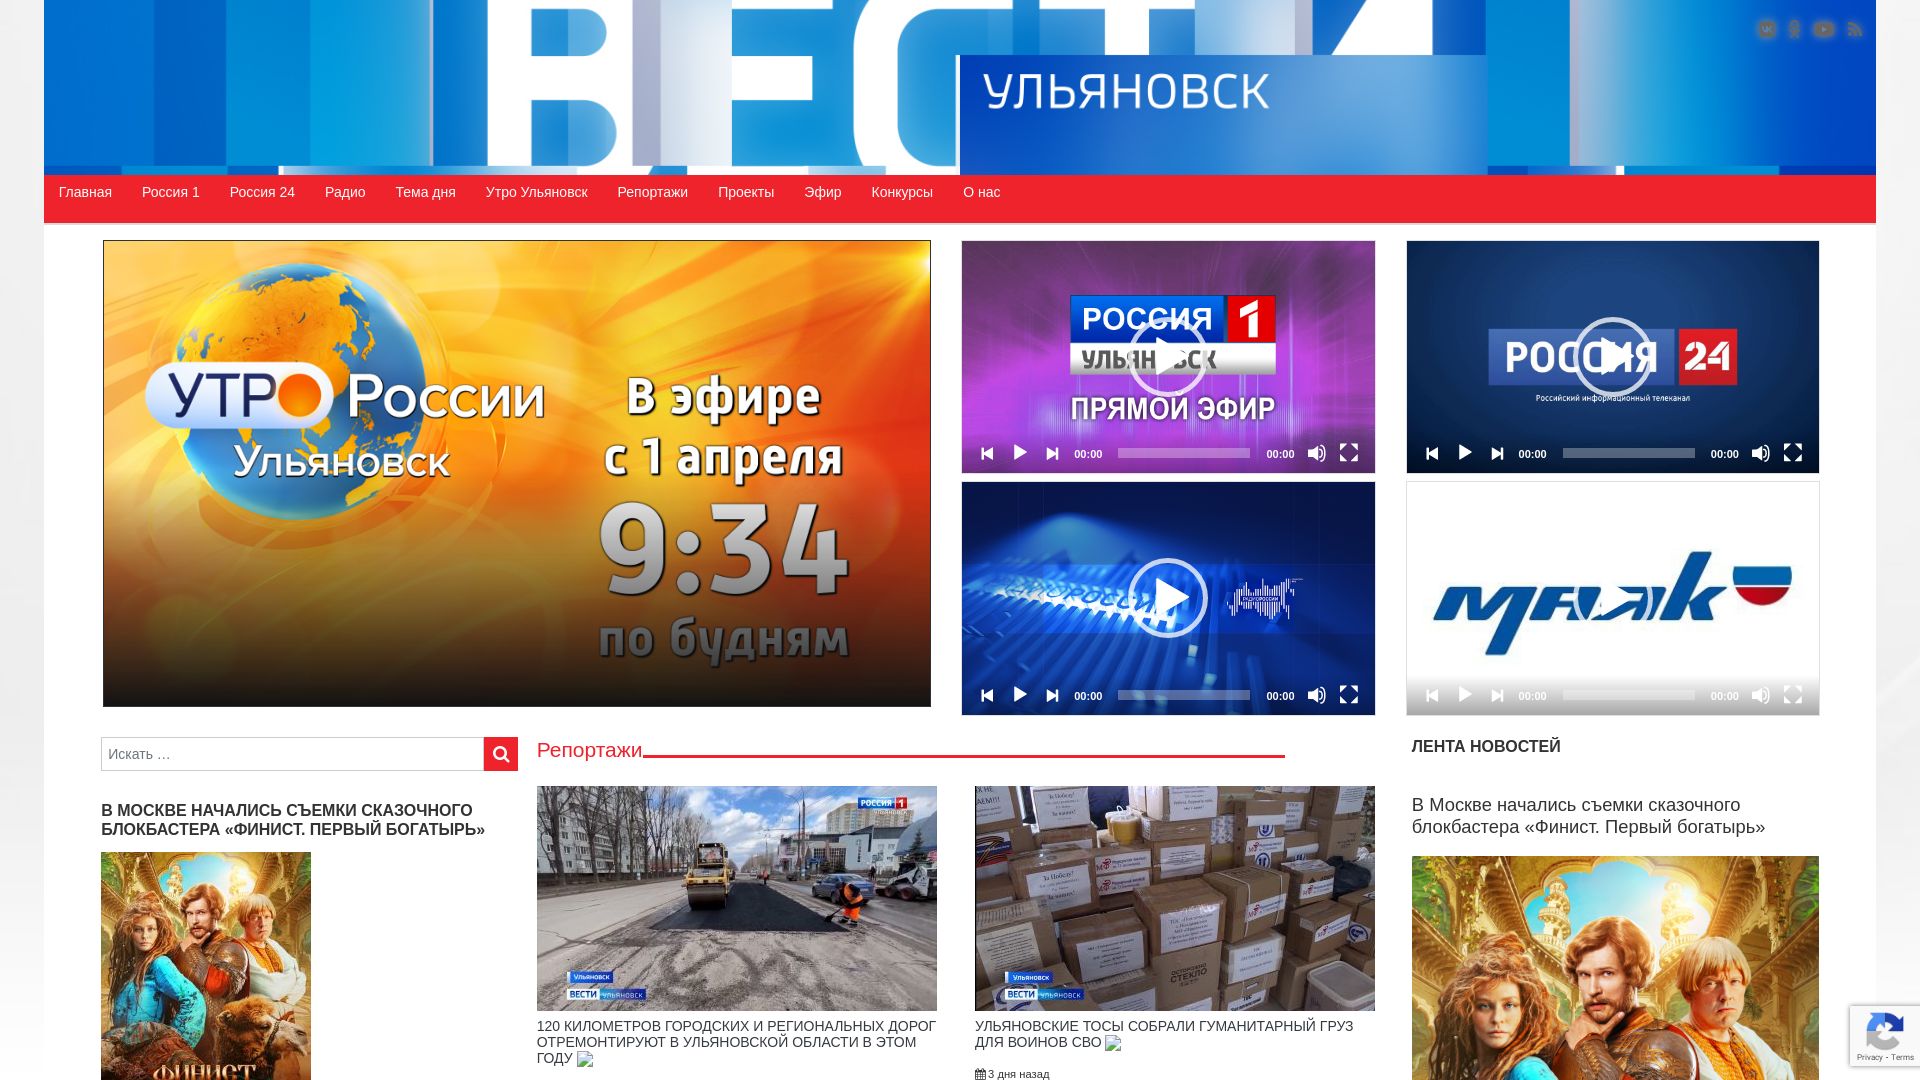 Website status gtrk-volga.ru is   ONLINE